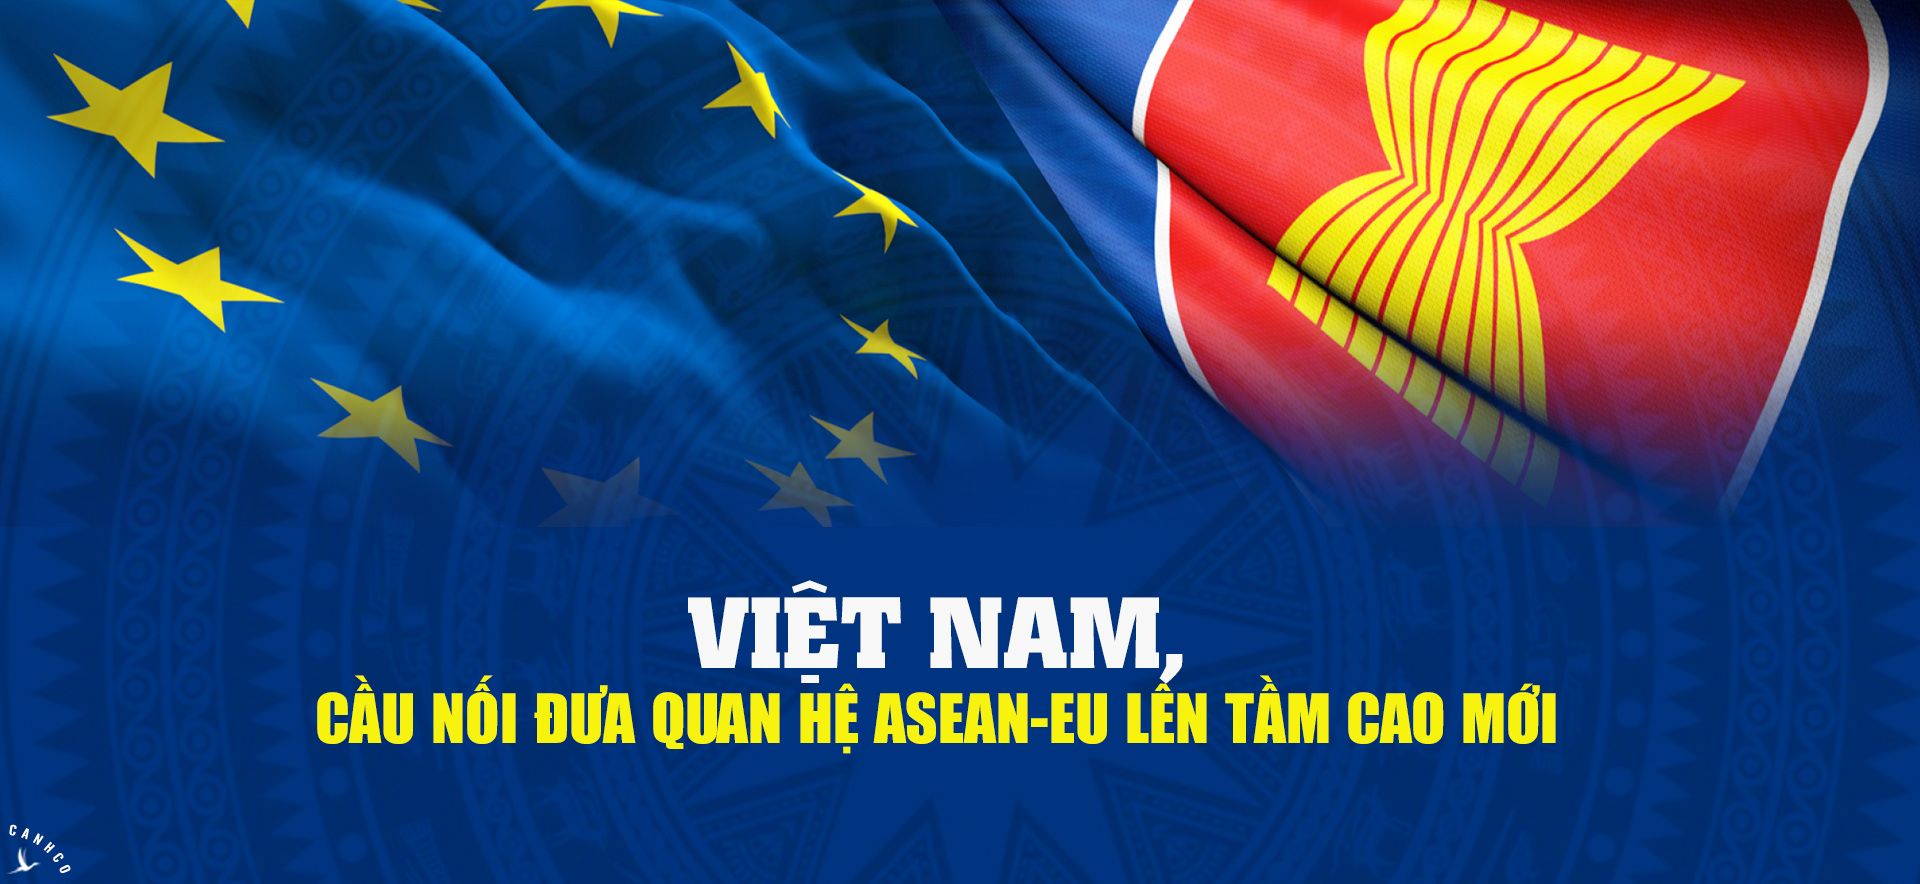 Việt Nam, cầu nối đưa quan hệ ASEAN-EU lên tầm cao mới